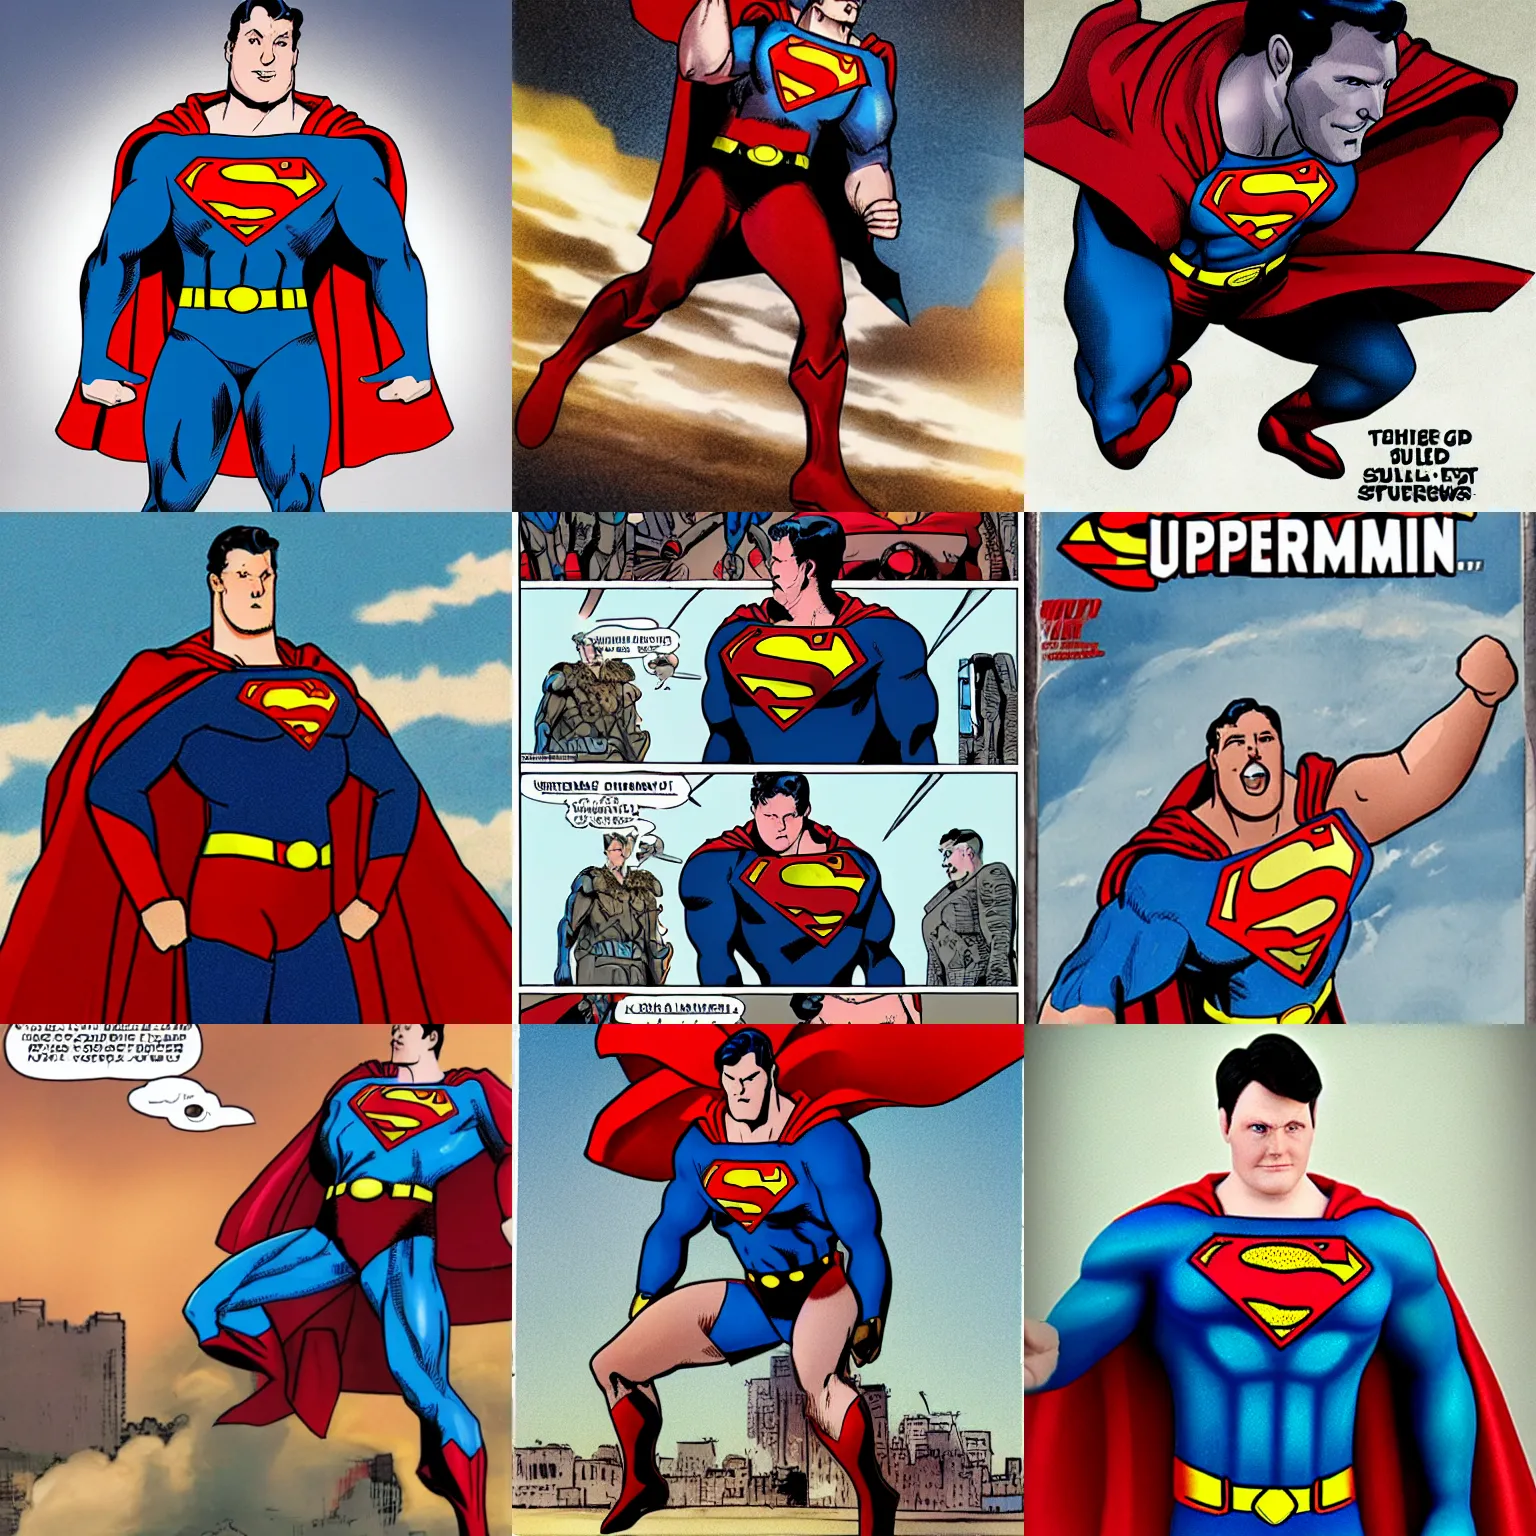 Prompt: angriestpat as superman